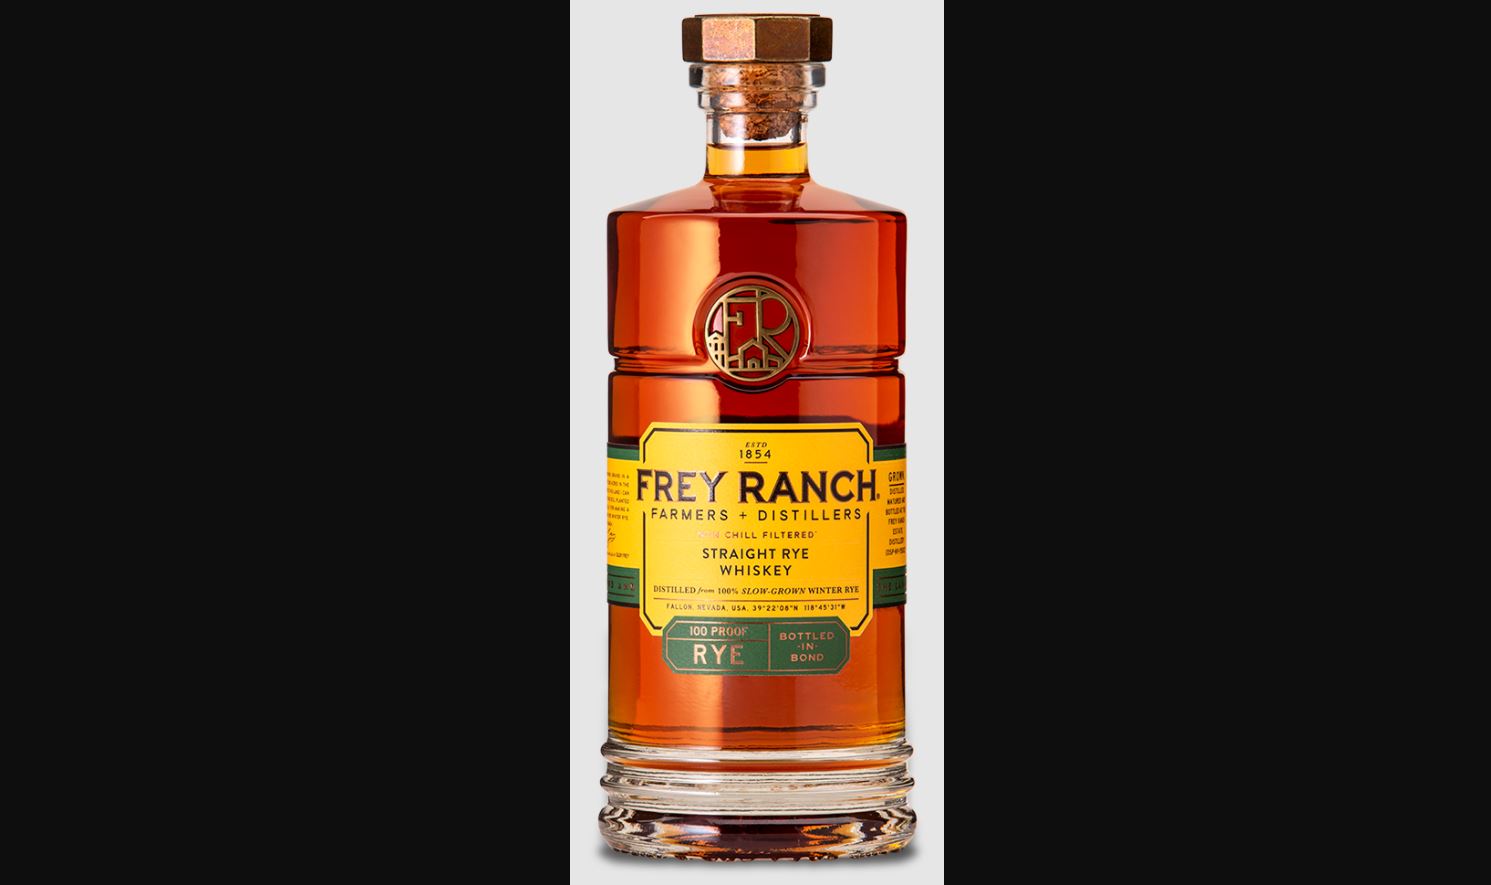 Frey Ranch Rye